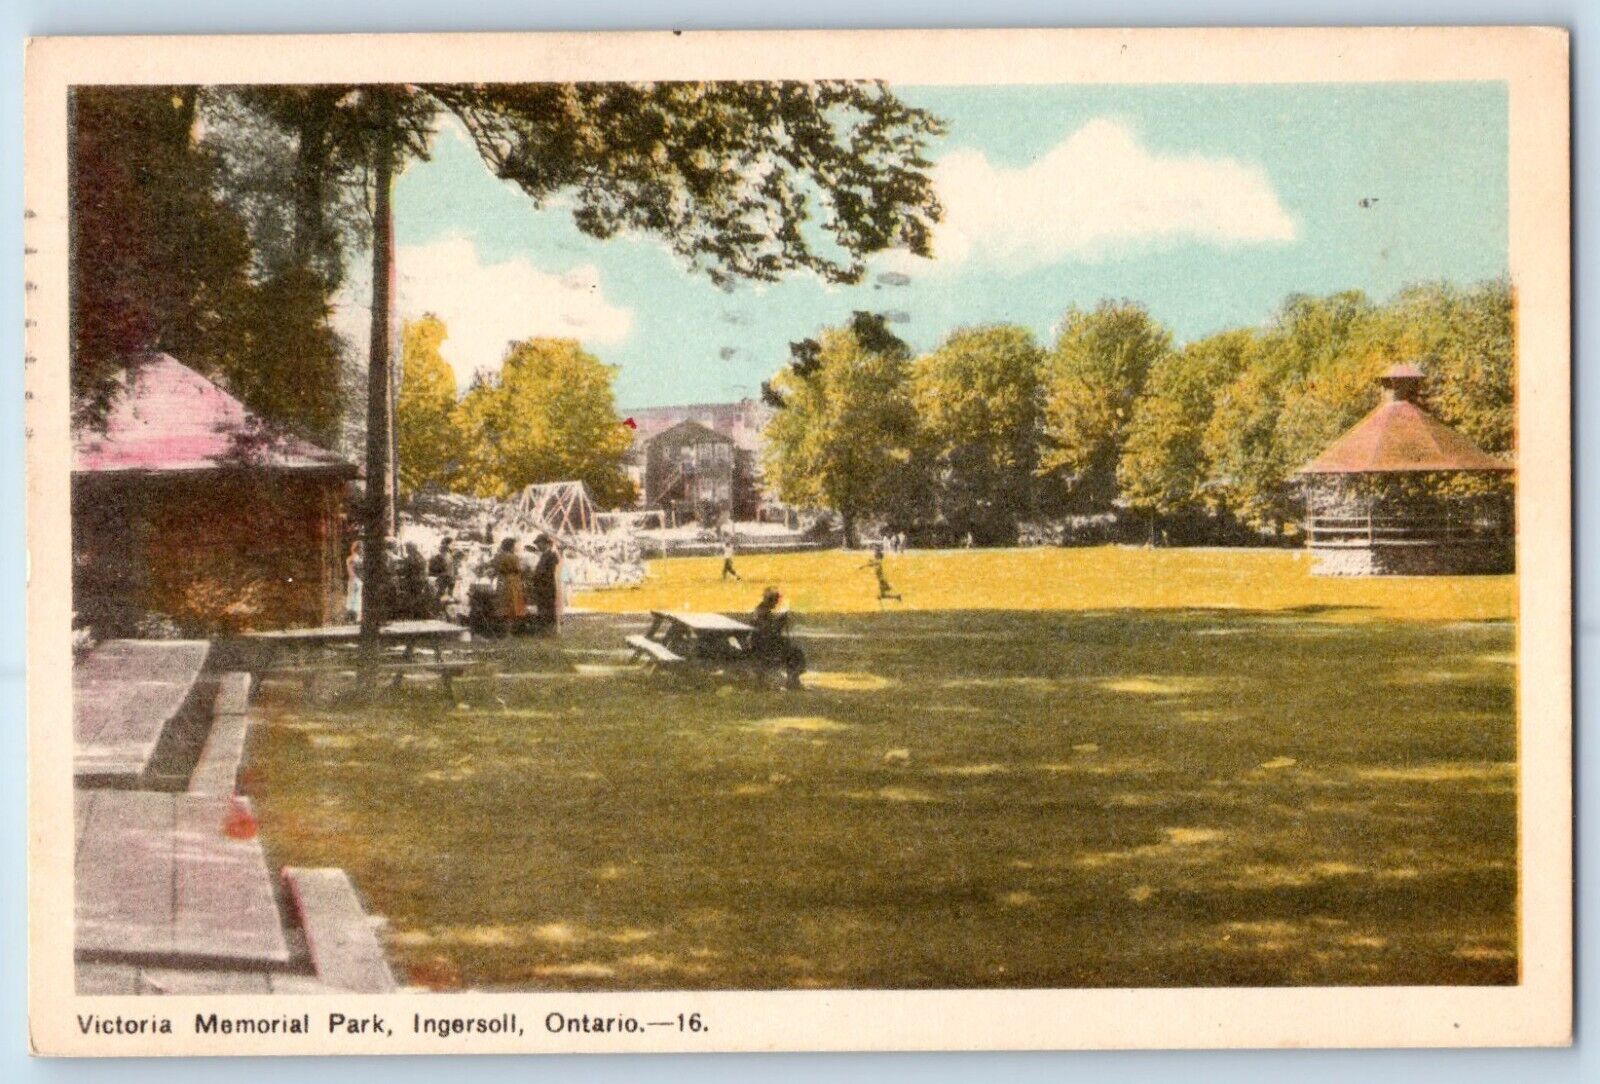 Ingersoll Ontario Canada Postcard Victoria Memorial Park 1957 Vintage